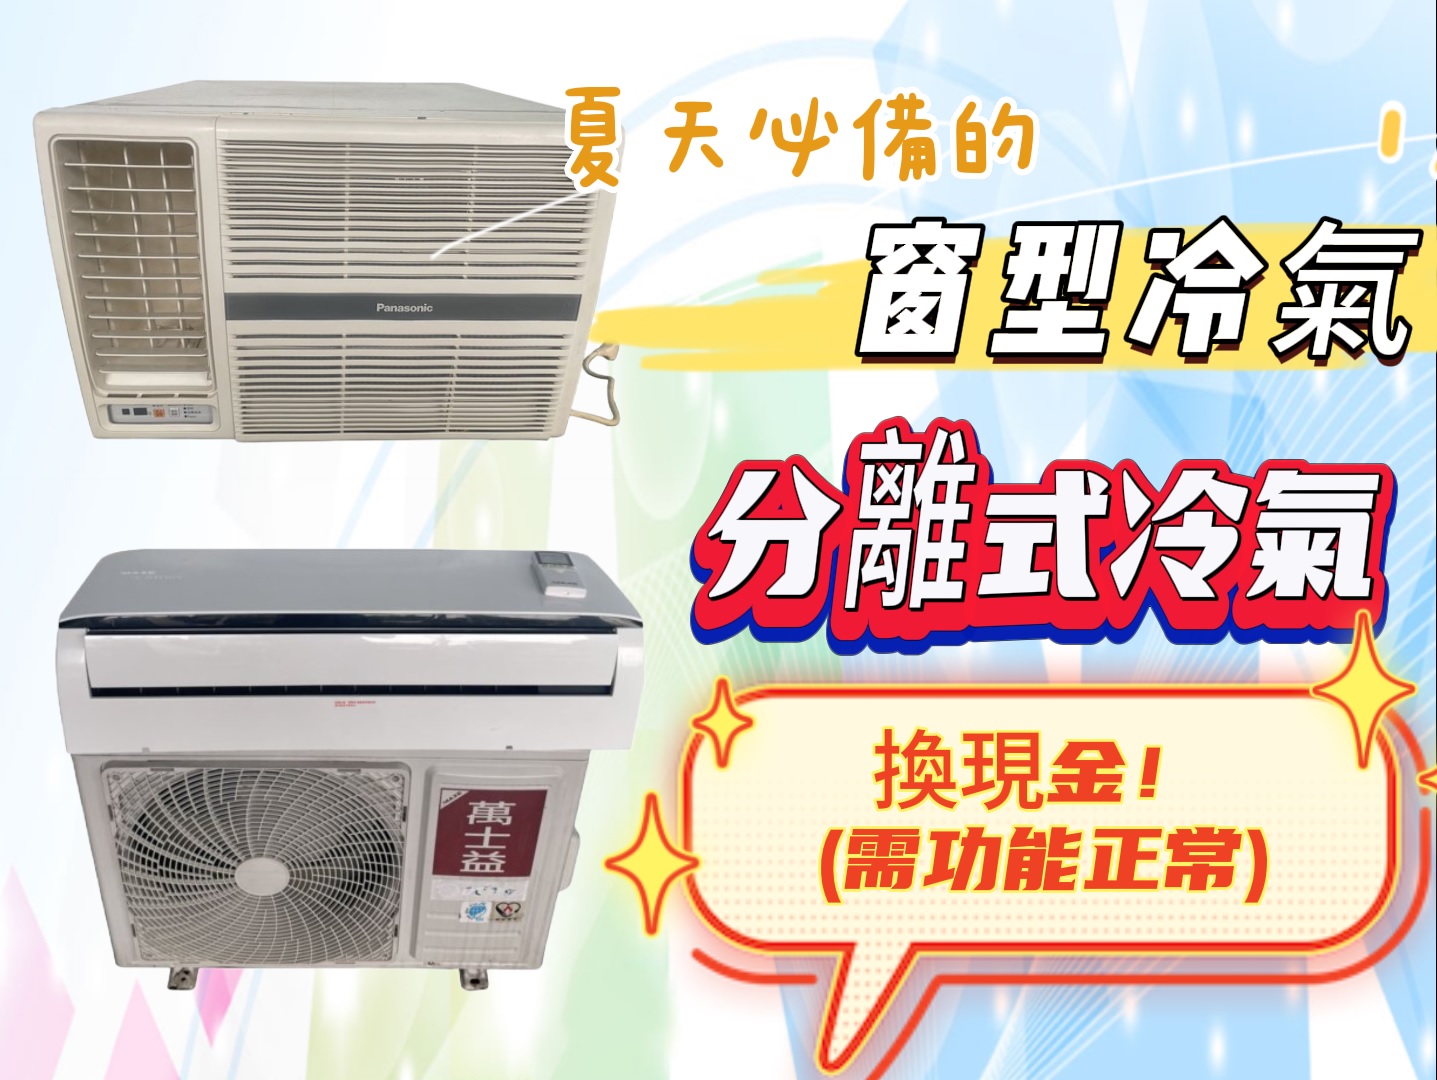 新竹~專業收購二手家電~冷氣 冰箱 洗衣機 現金收購免費搬運0967060888 - 20230606133324-42132134.jpg(圖)